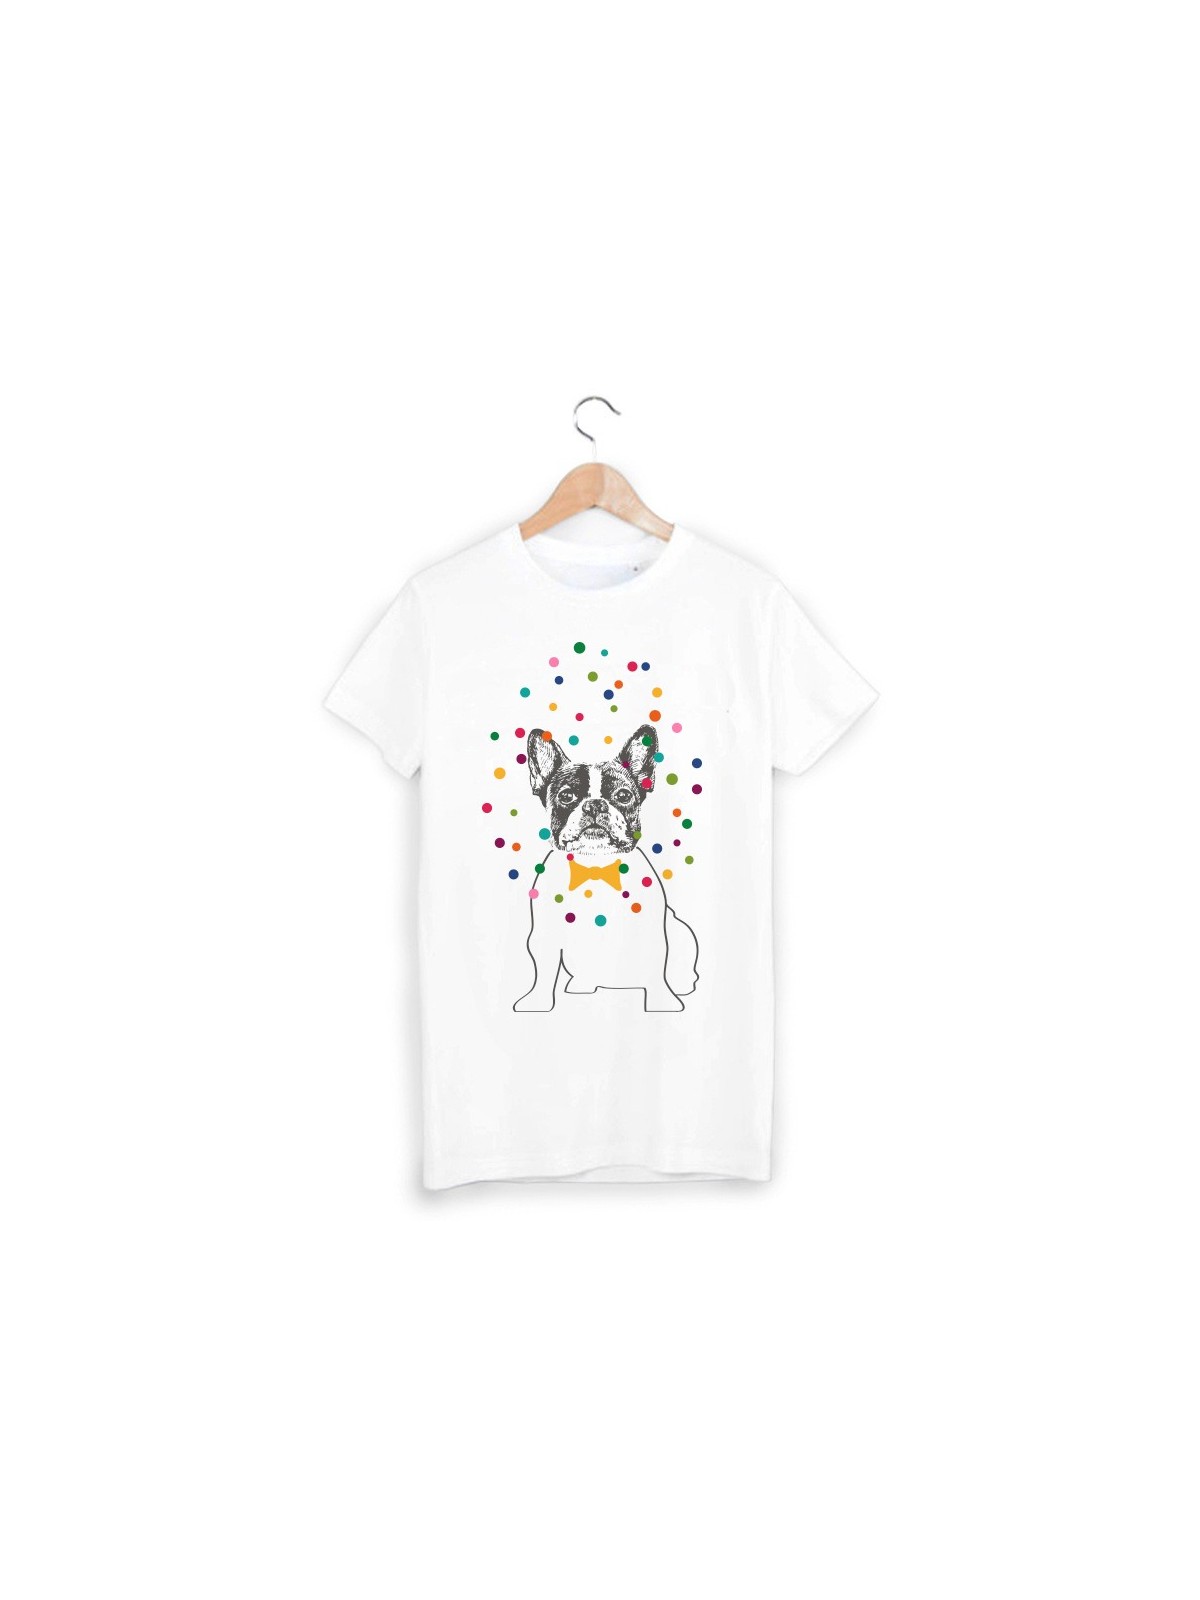 T-Shirt illustrÃ© chien couleur ref 1541